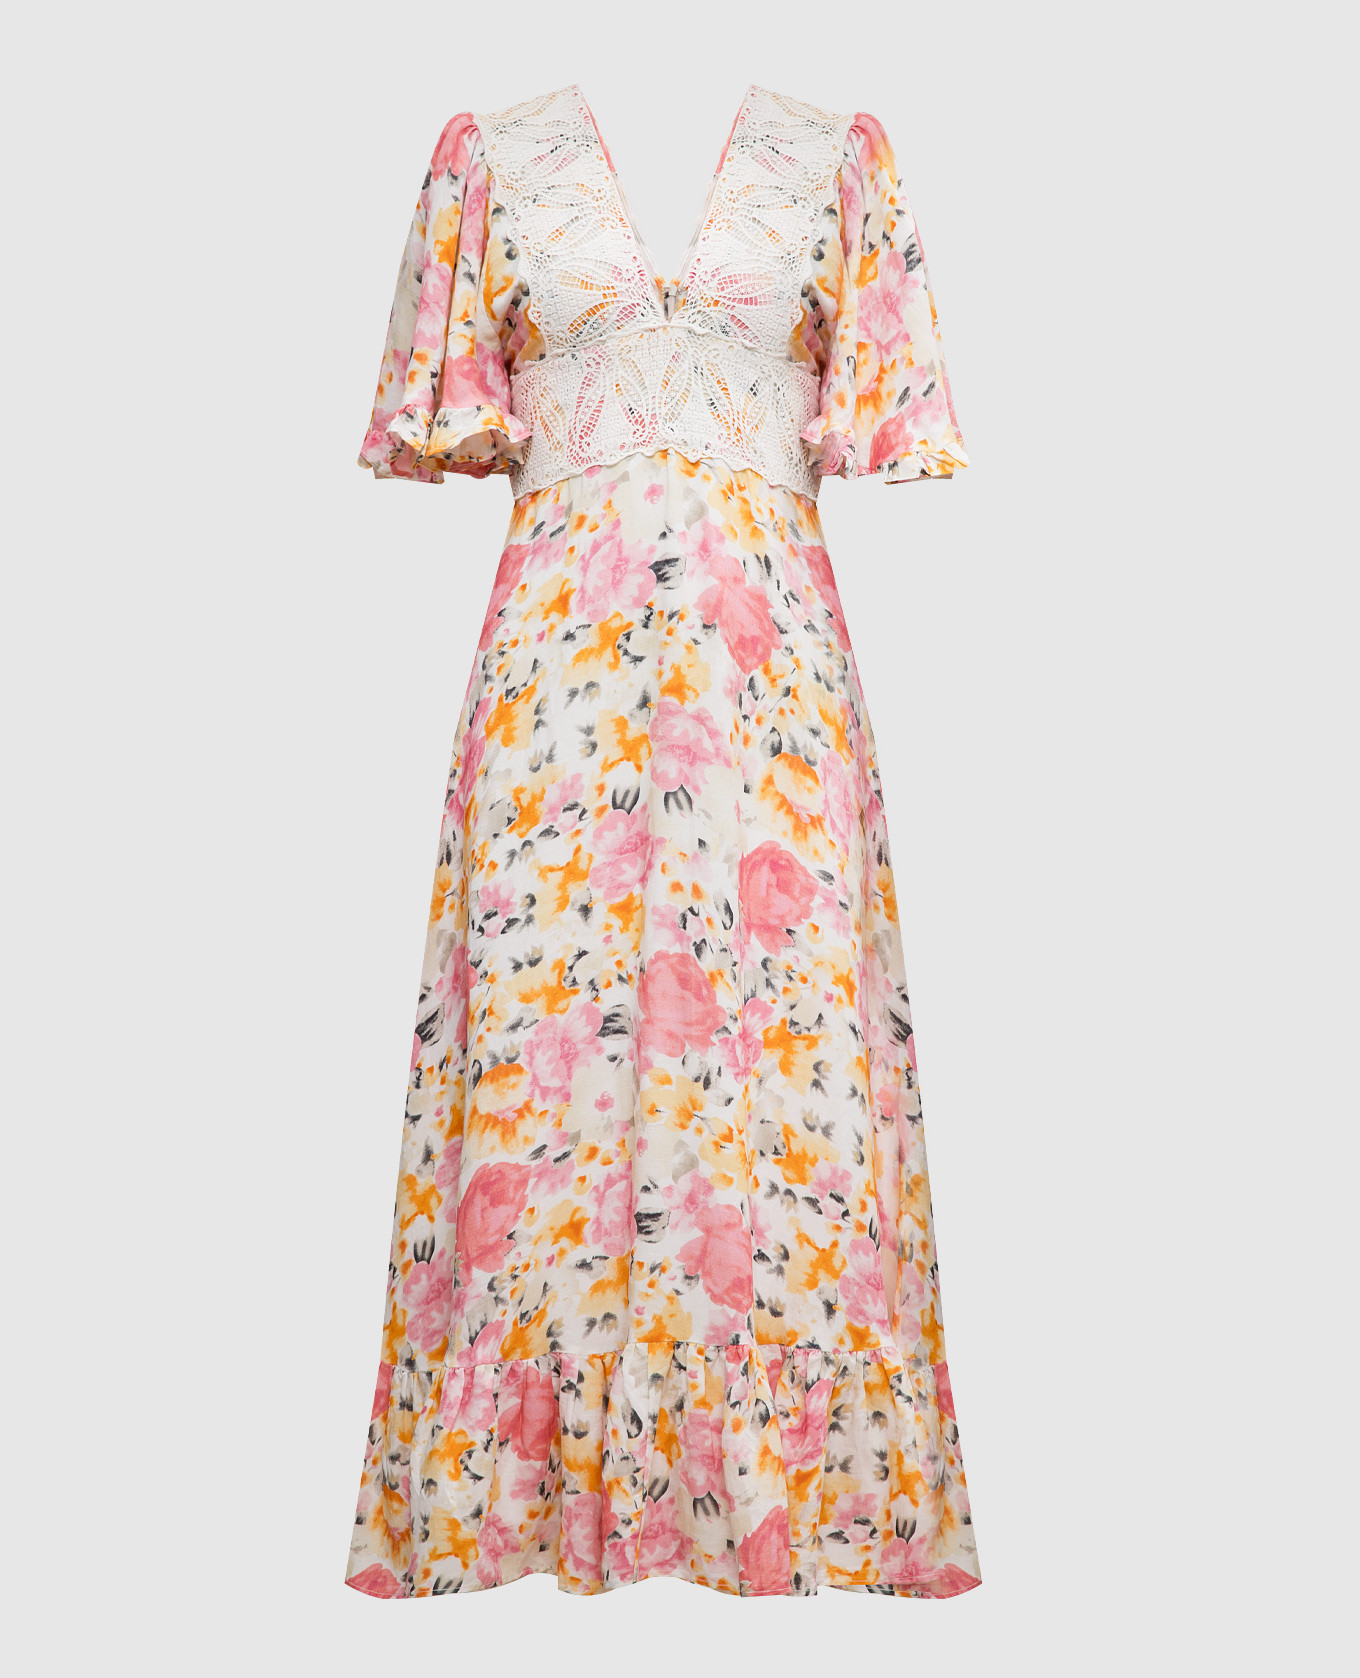 Бежевое платье с льном в цветочный принт с кружевом.